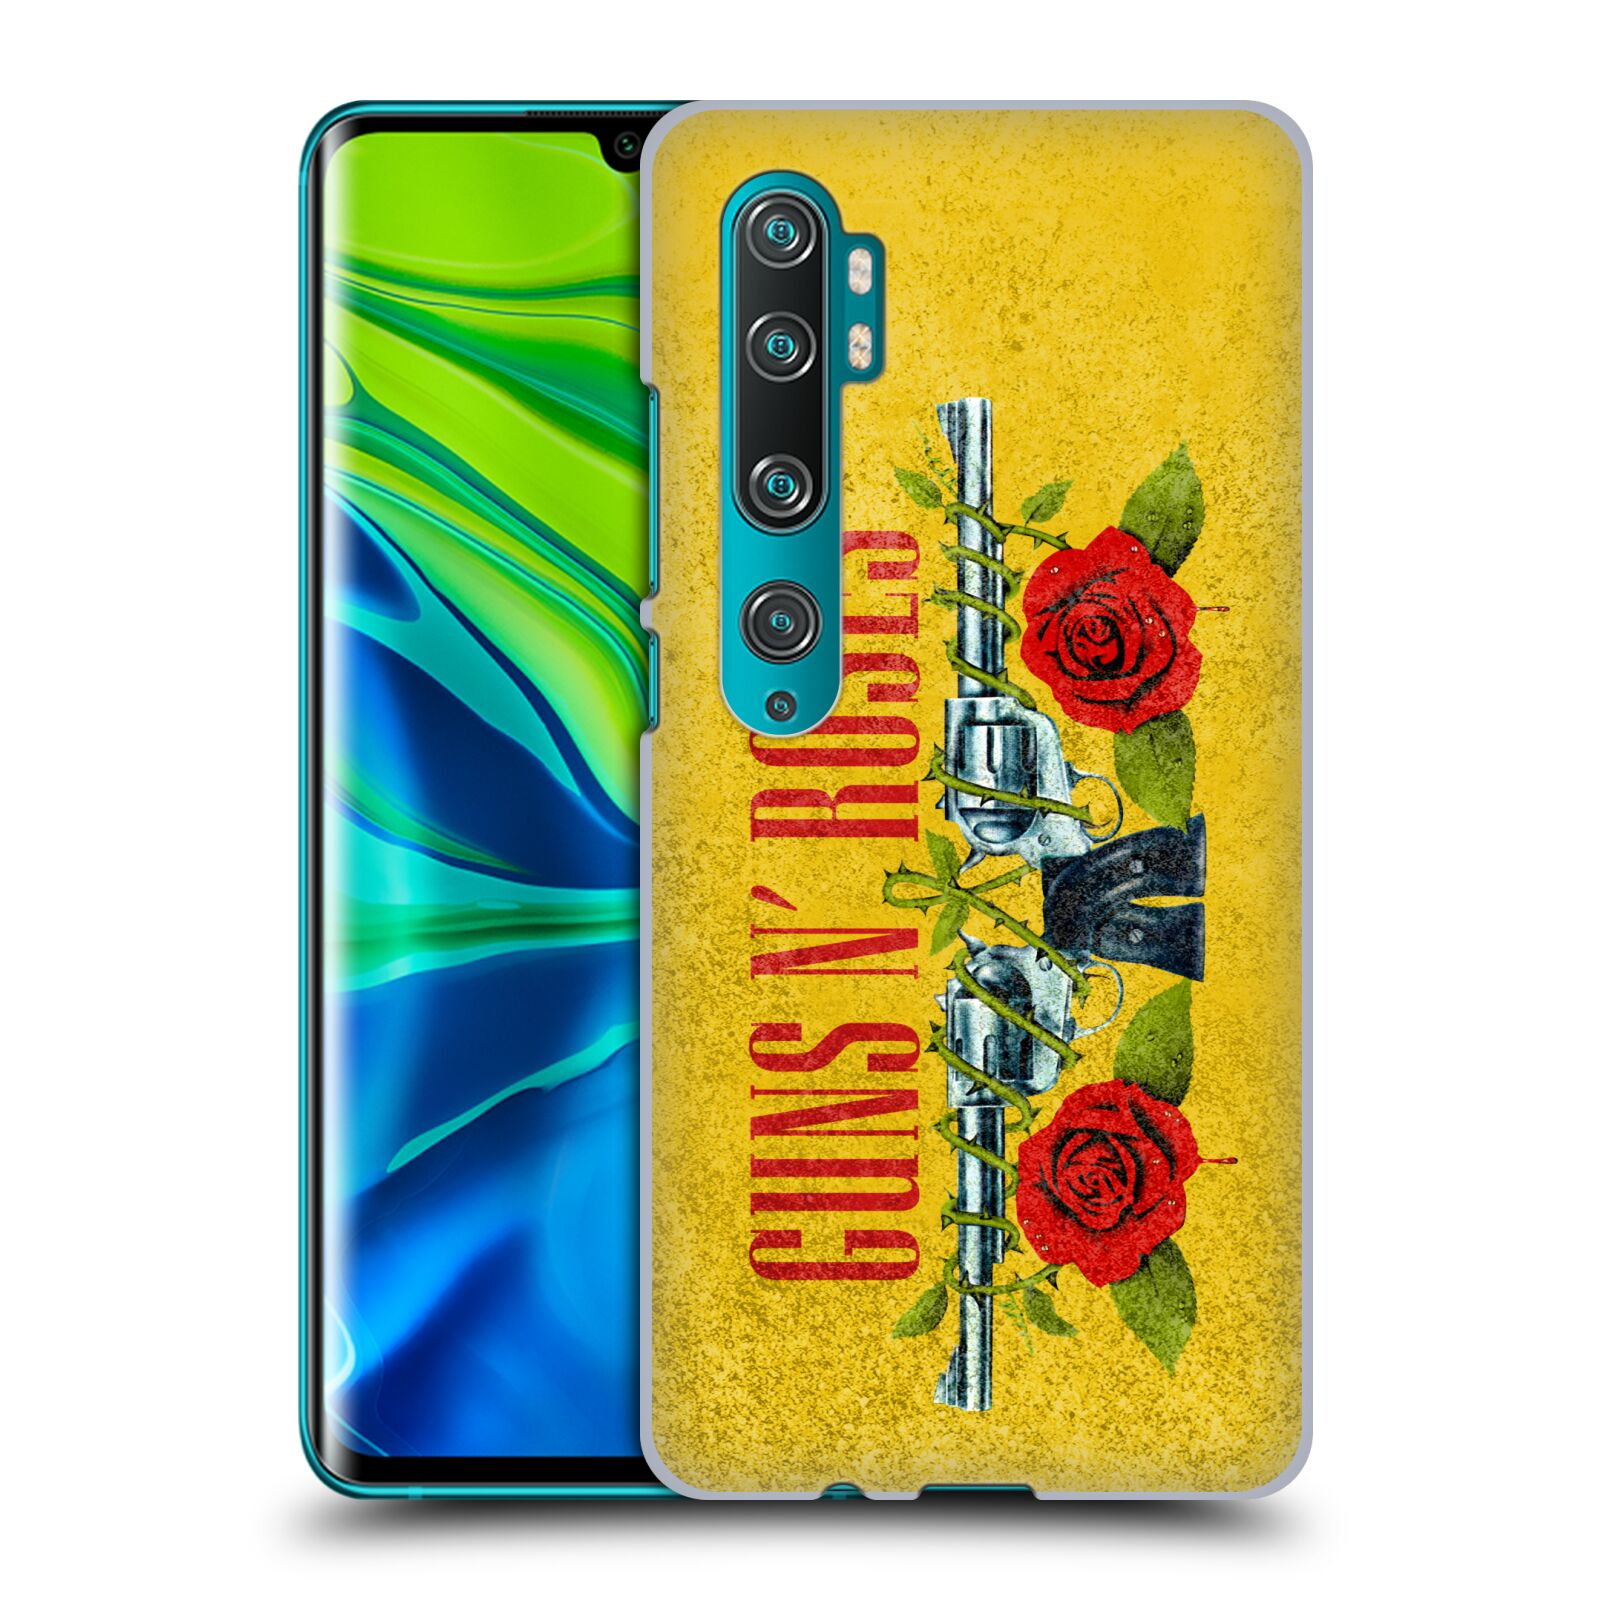 Pouzdro na mobil Xiaomi Mi Note 10 / Mi Note 10 PRO - HEAD CASE - hudební skupina Guns N Roses pistole a růže žluté pozadí